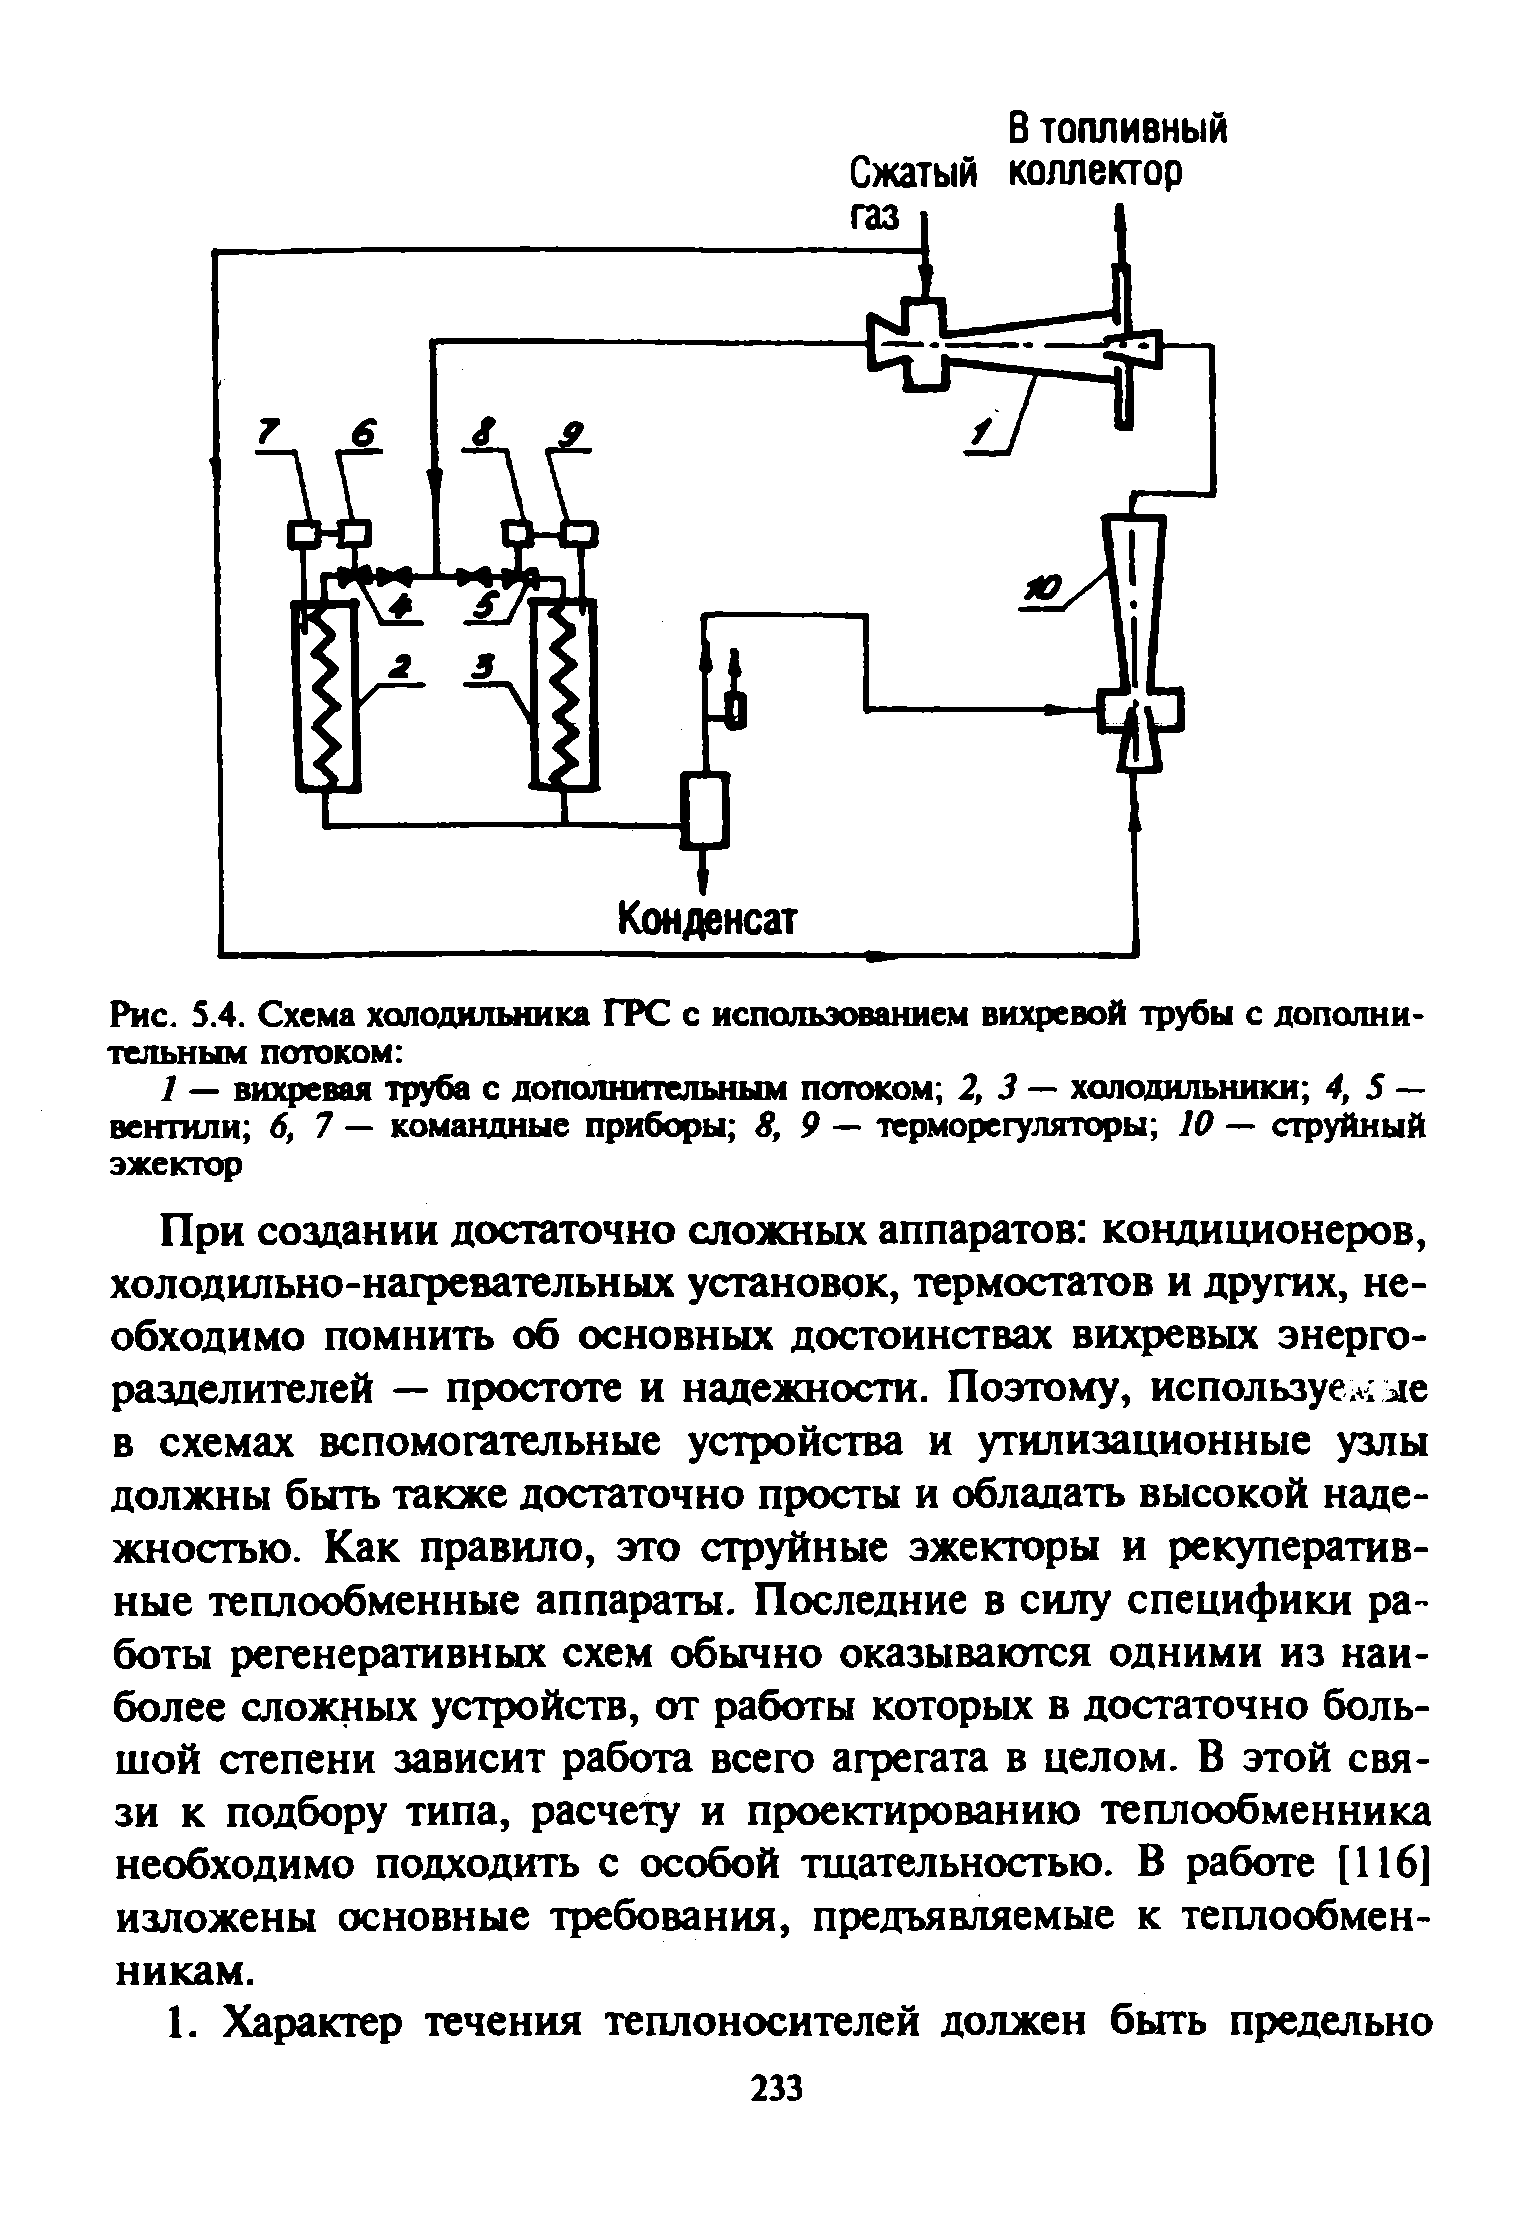 Рис. S.4. Схема холодильника ГРС с использованием вихревой 1ру6ы с дополнительным потоком 
